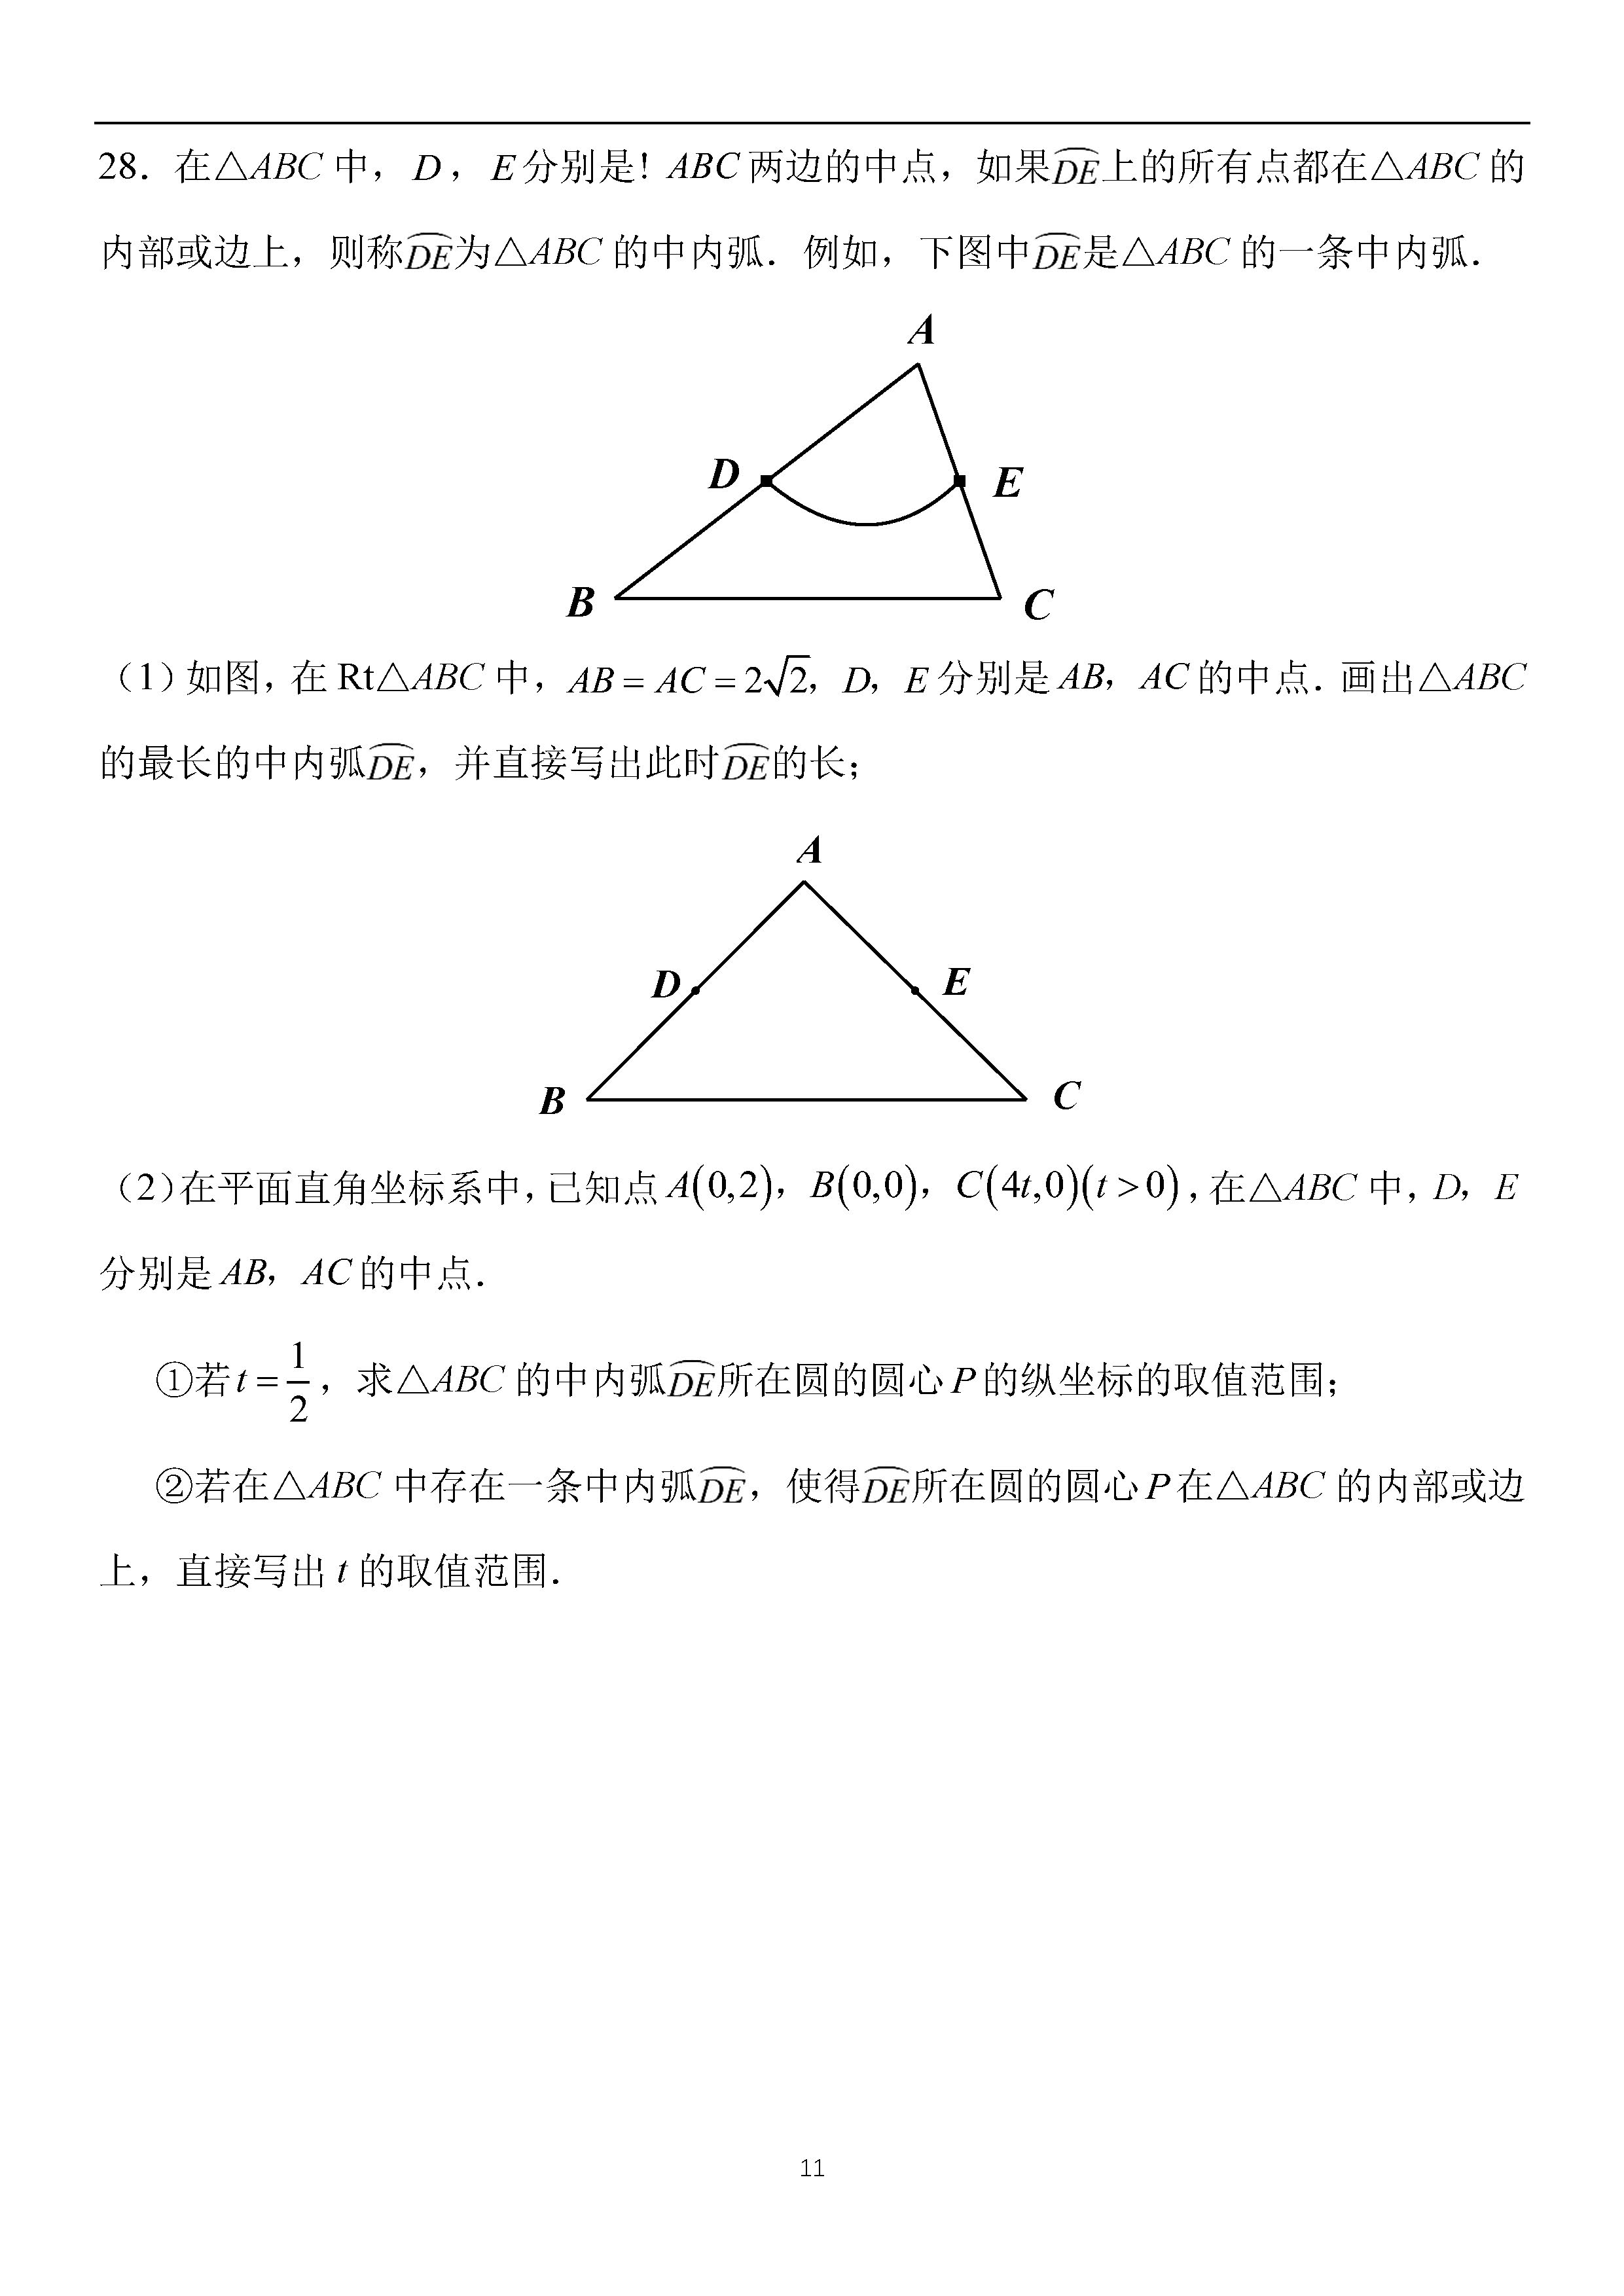 2019年北京中考数学真题及答案已公布